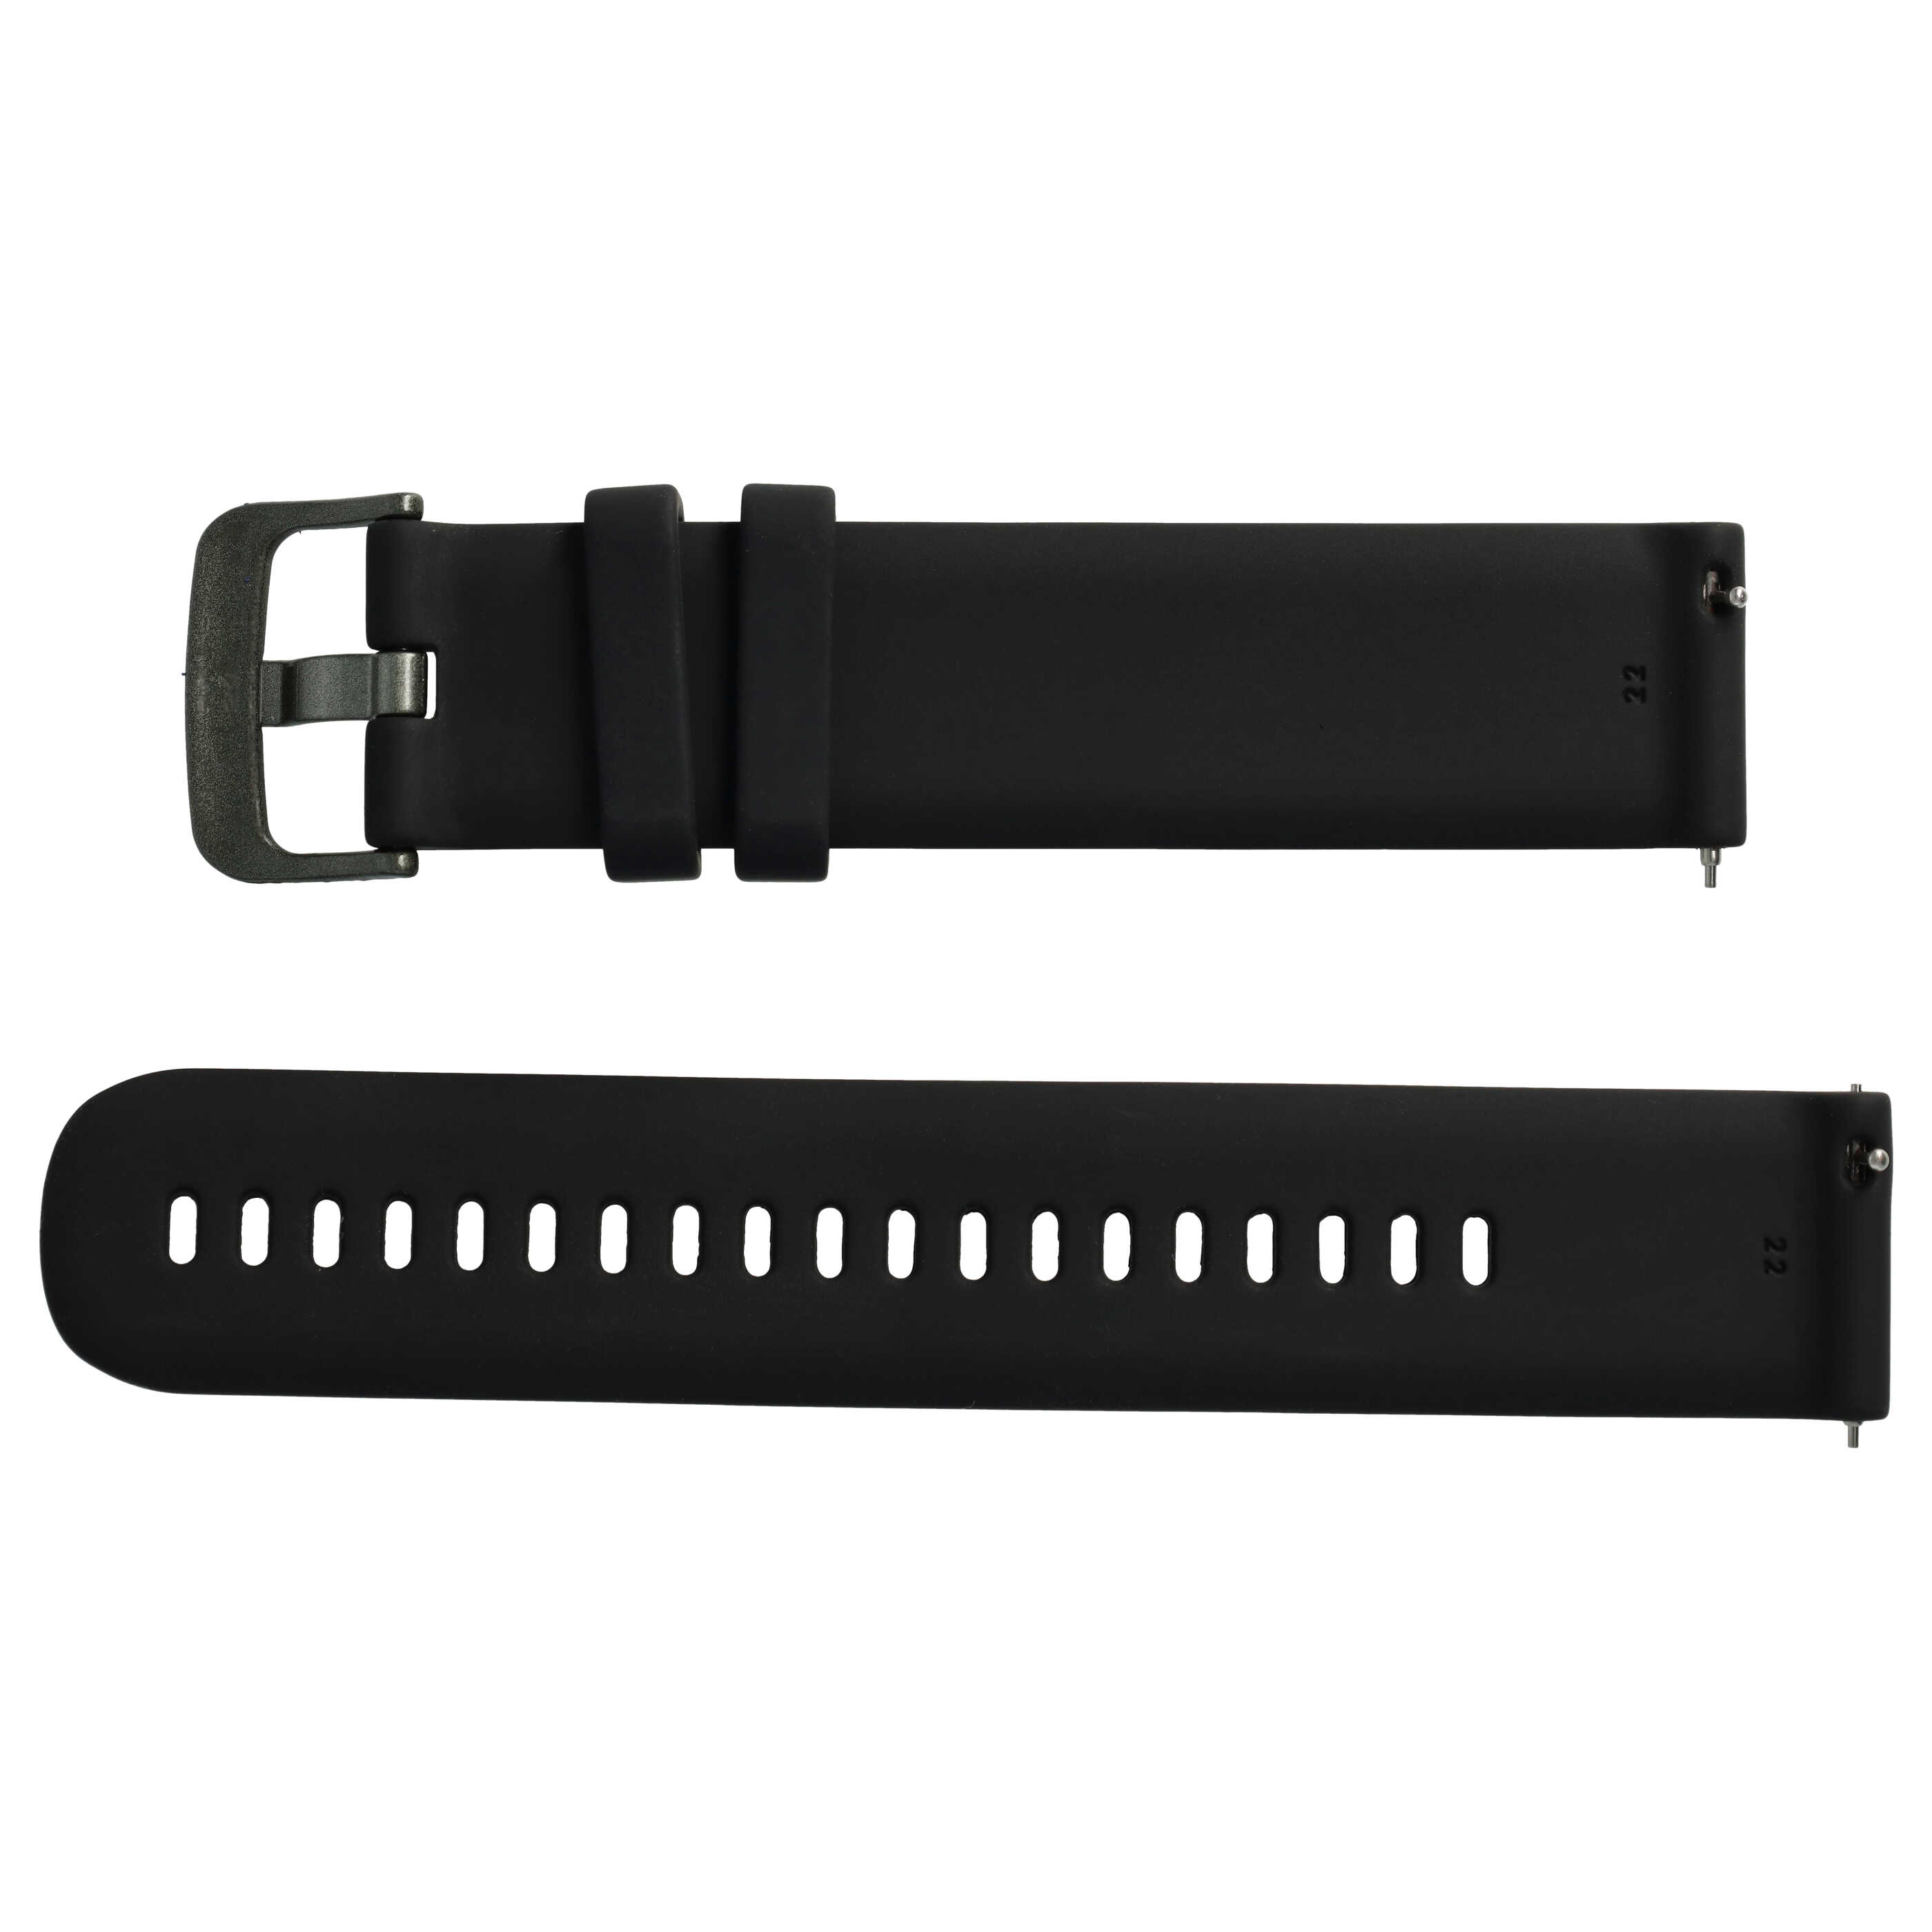 Bracelet L de remplacement pour montre intelligente Samsung Galaxy Watch - tour de montre max 270 mm, silicone